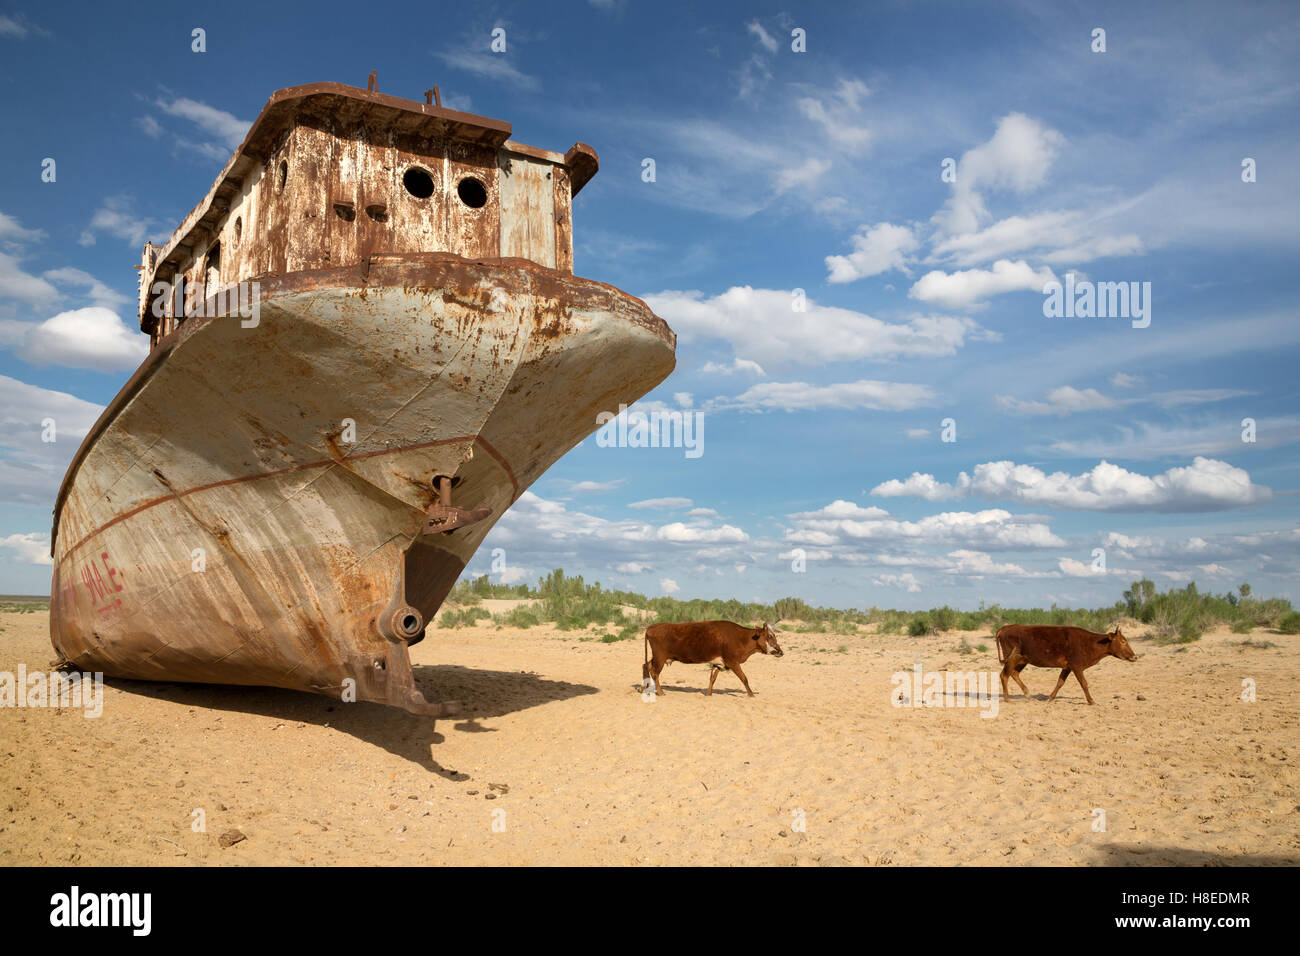 Moynaq - Mar de Aral - Uzbekistán - Karakalpakstán - Asia Foto de stock